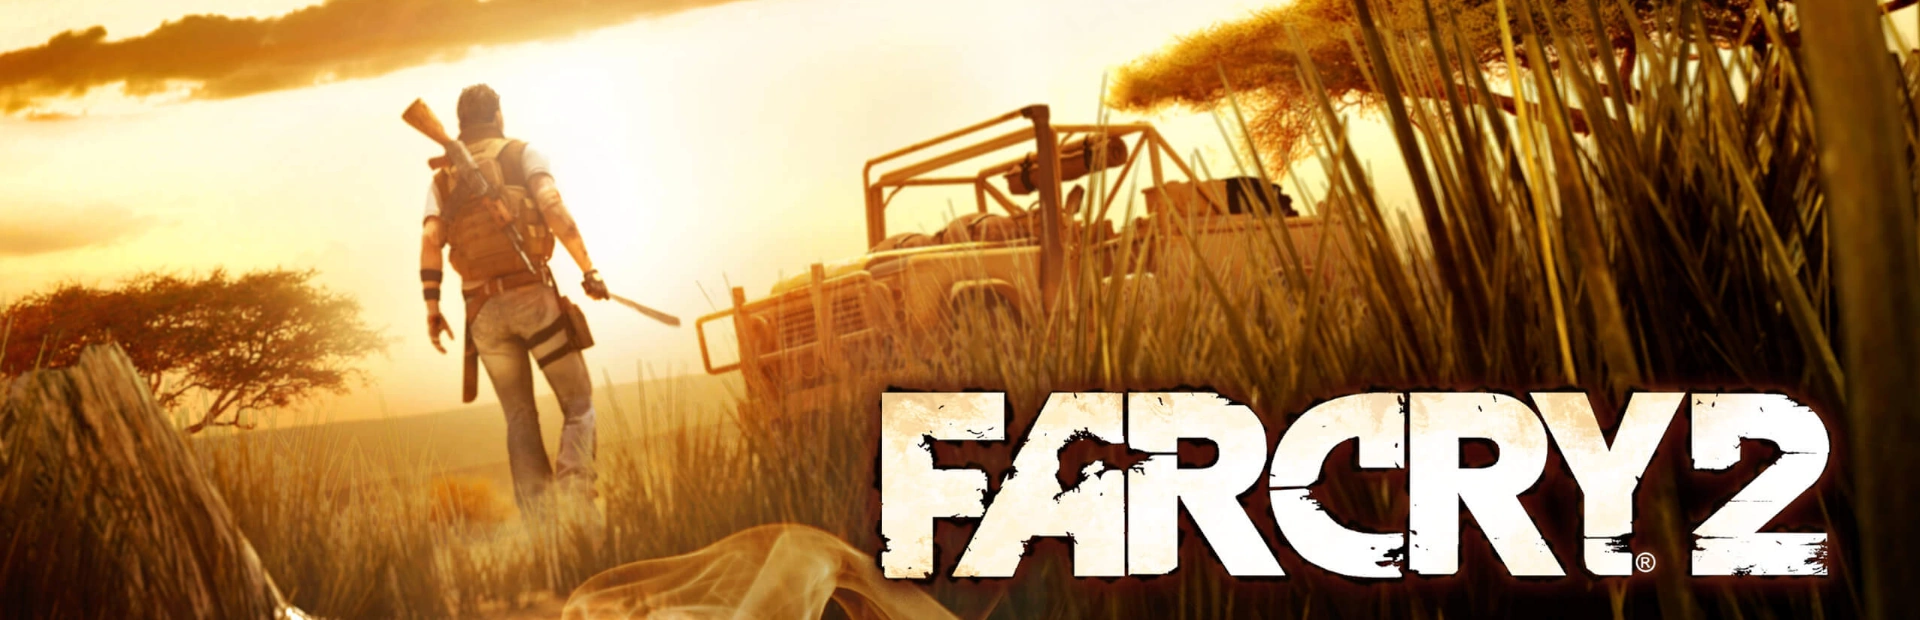 دانلود بازی Far Cry 2 برای کامپیوتر بدون نیار کرک | گیمباتو